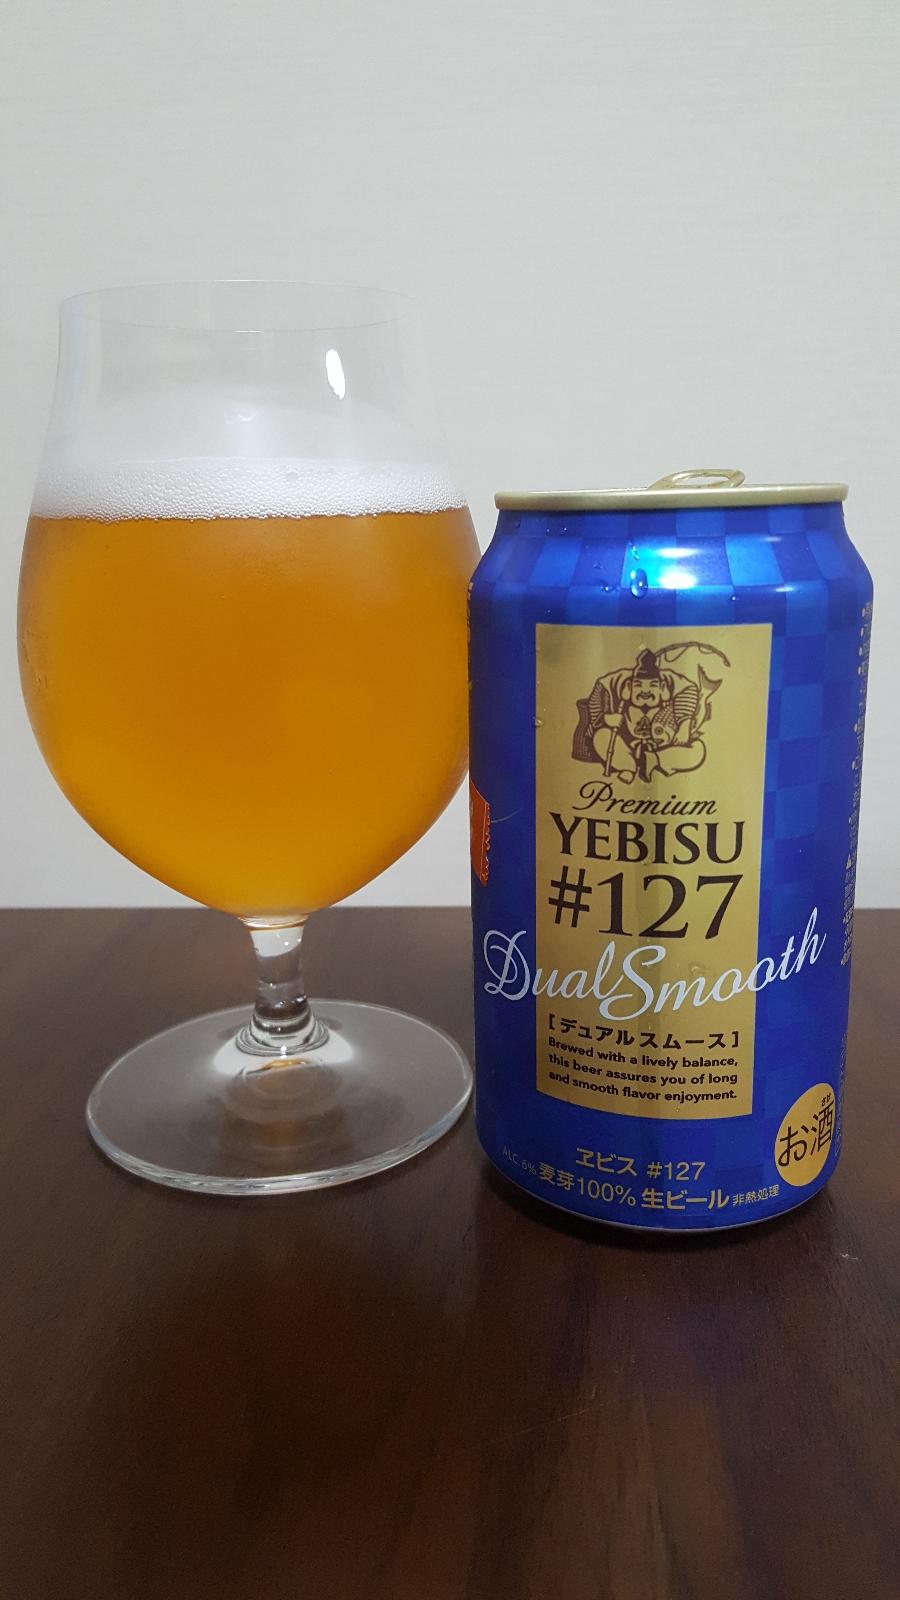 Yebisu Premium #127 Dual Smooth